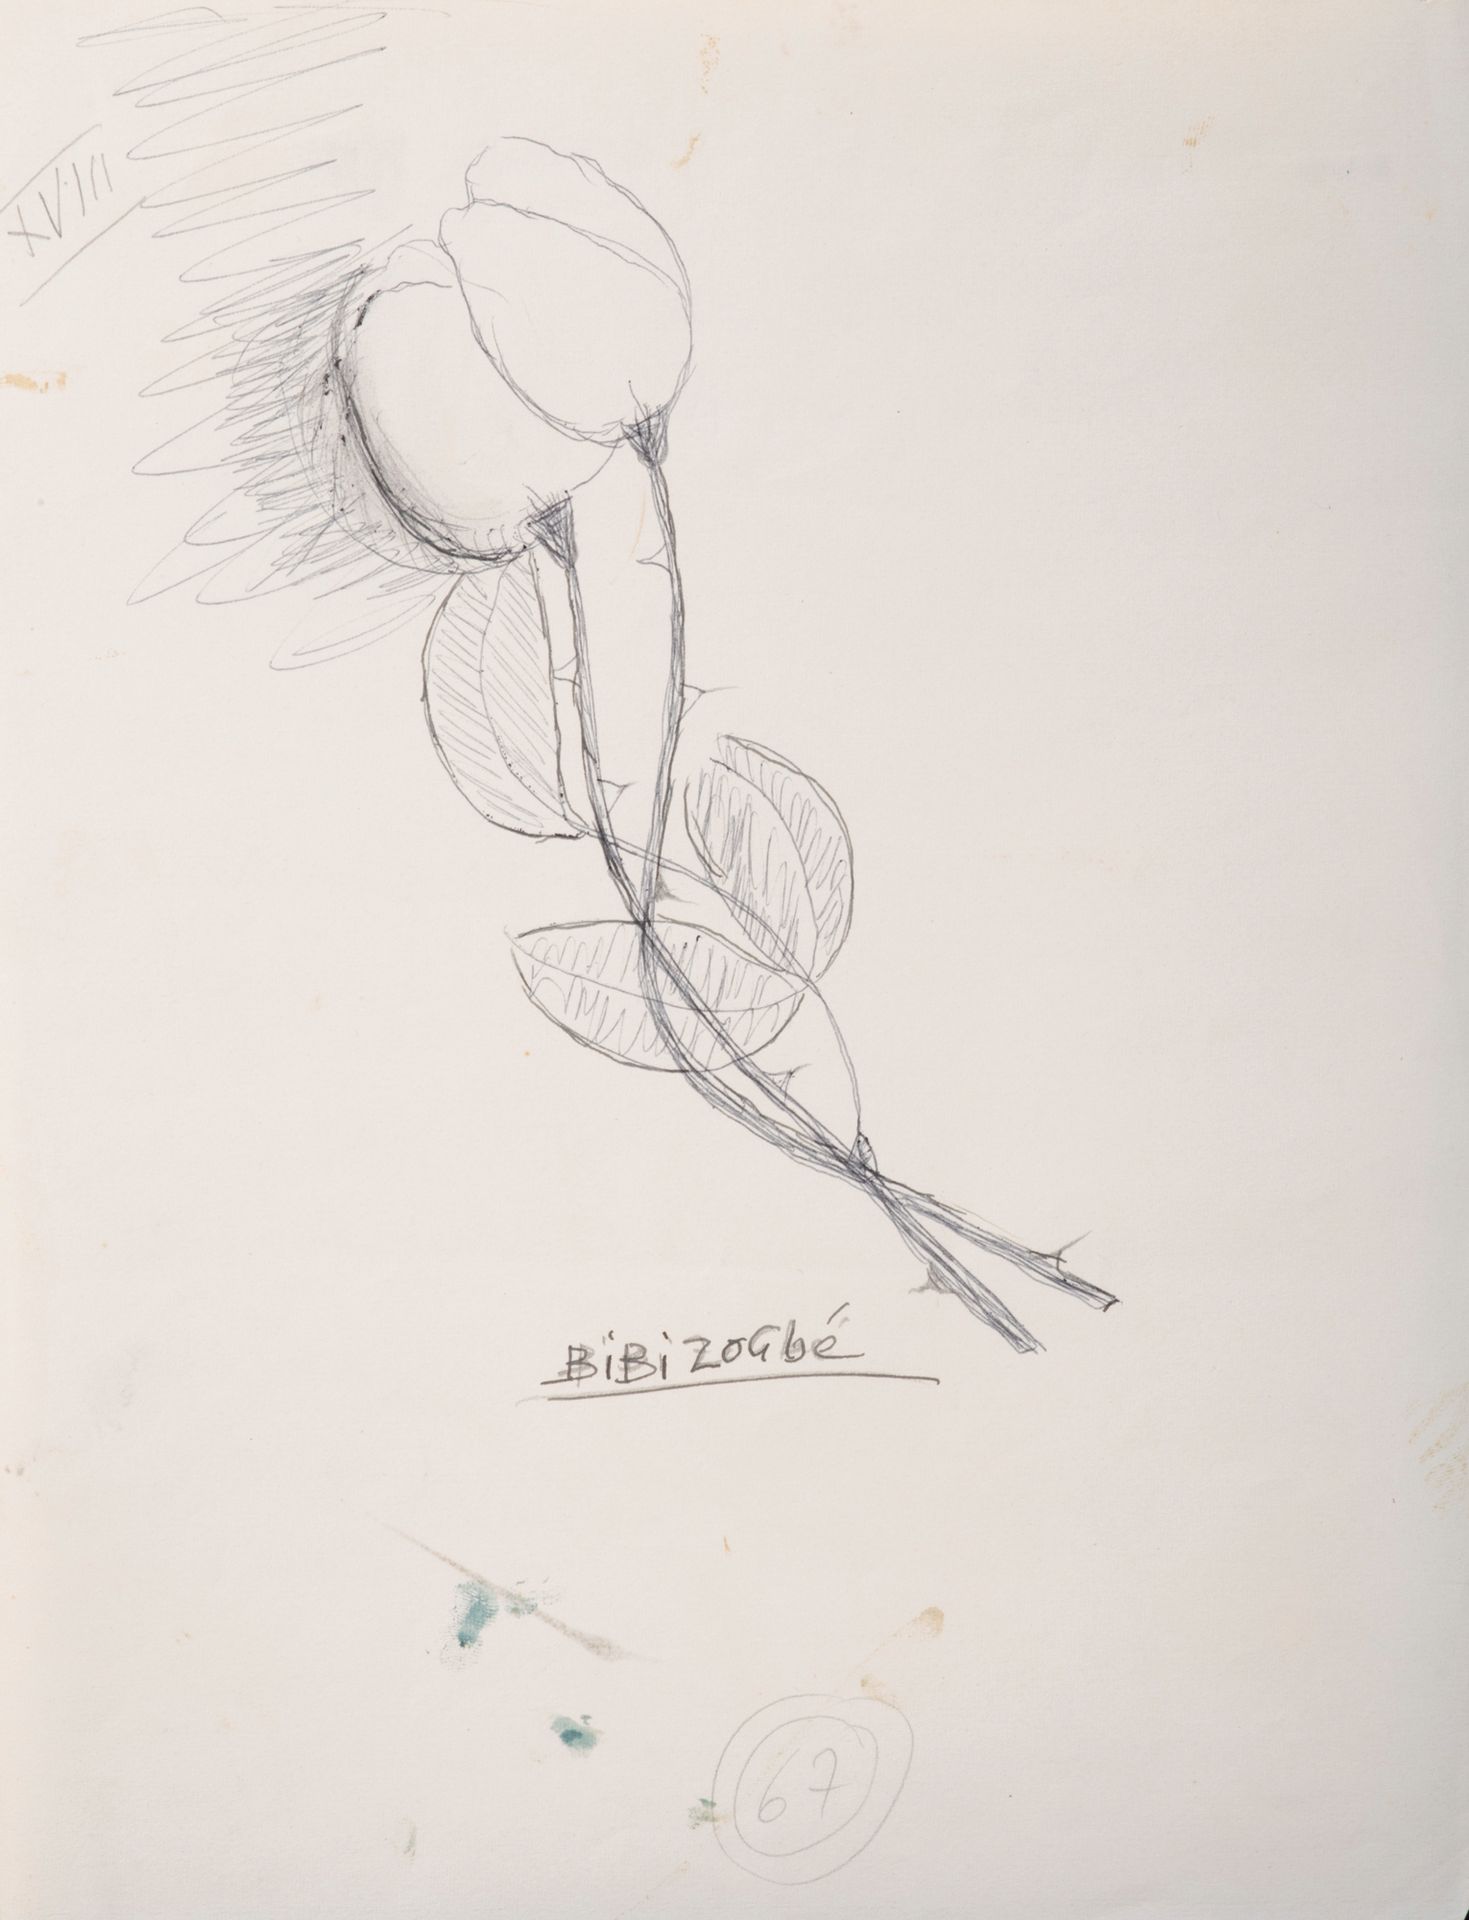 BIBI ZOGBE (1890-1973) Fiore
Matita su carta, firmato in basso al centro, macchi&hellip;